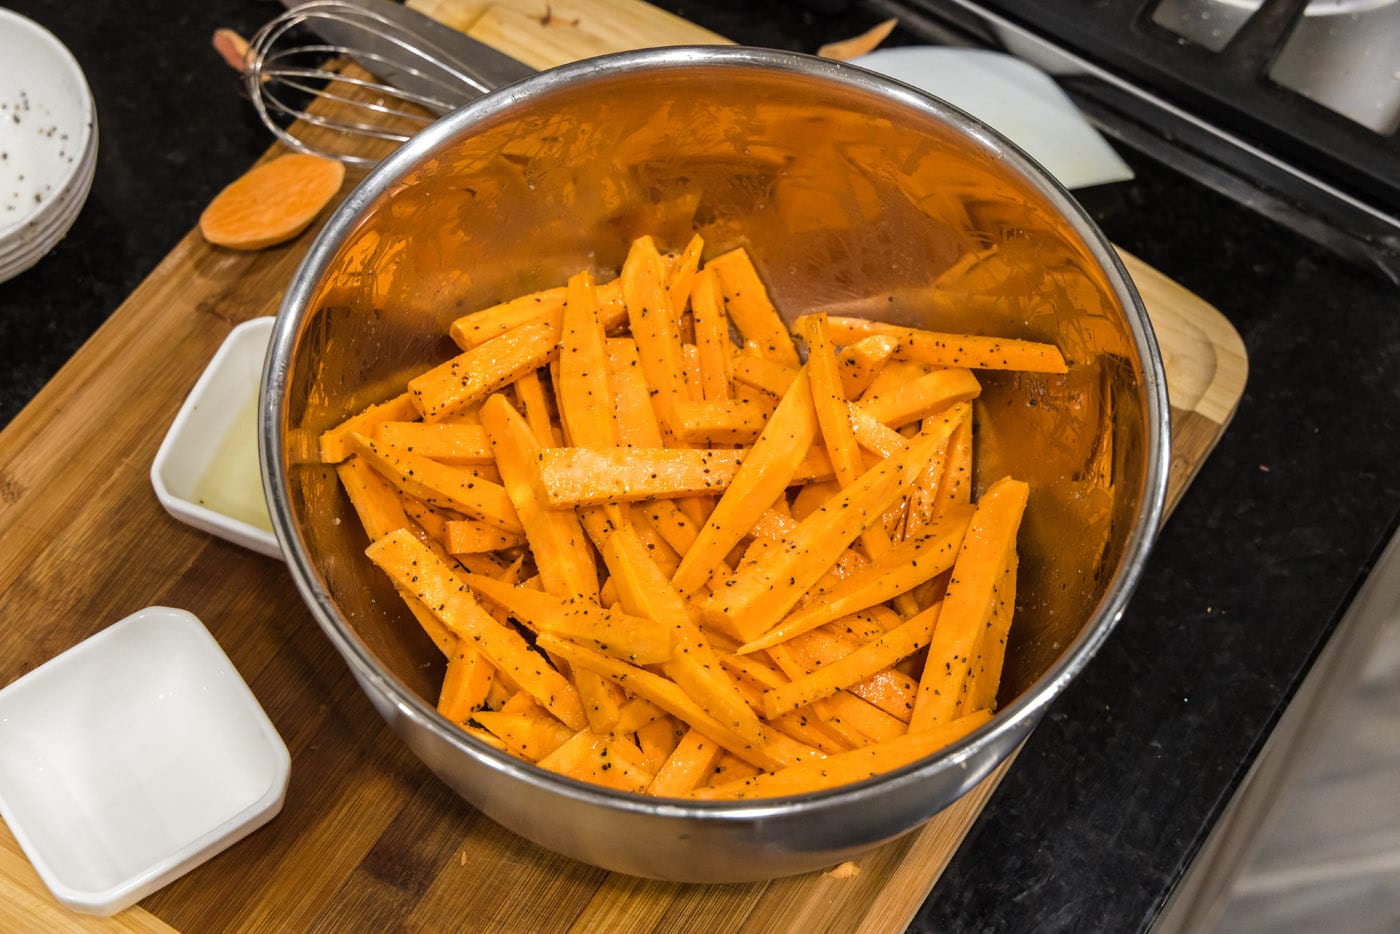 sweet potato fries tossed in oil and seasonings